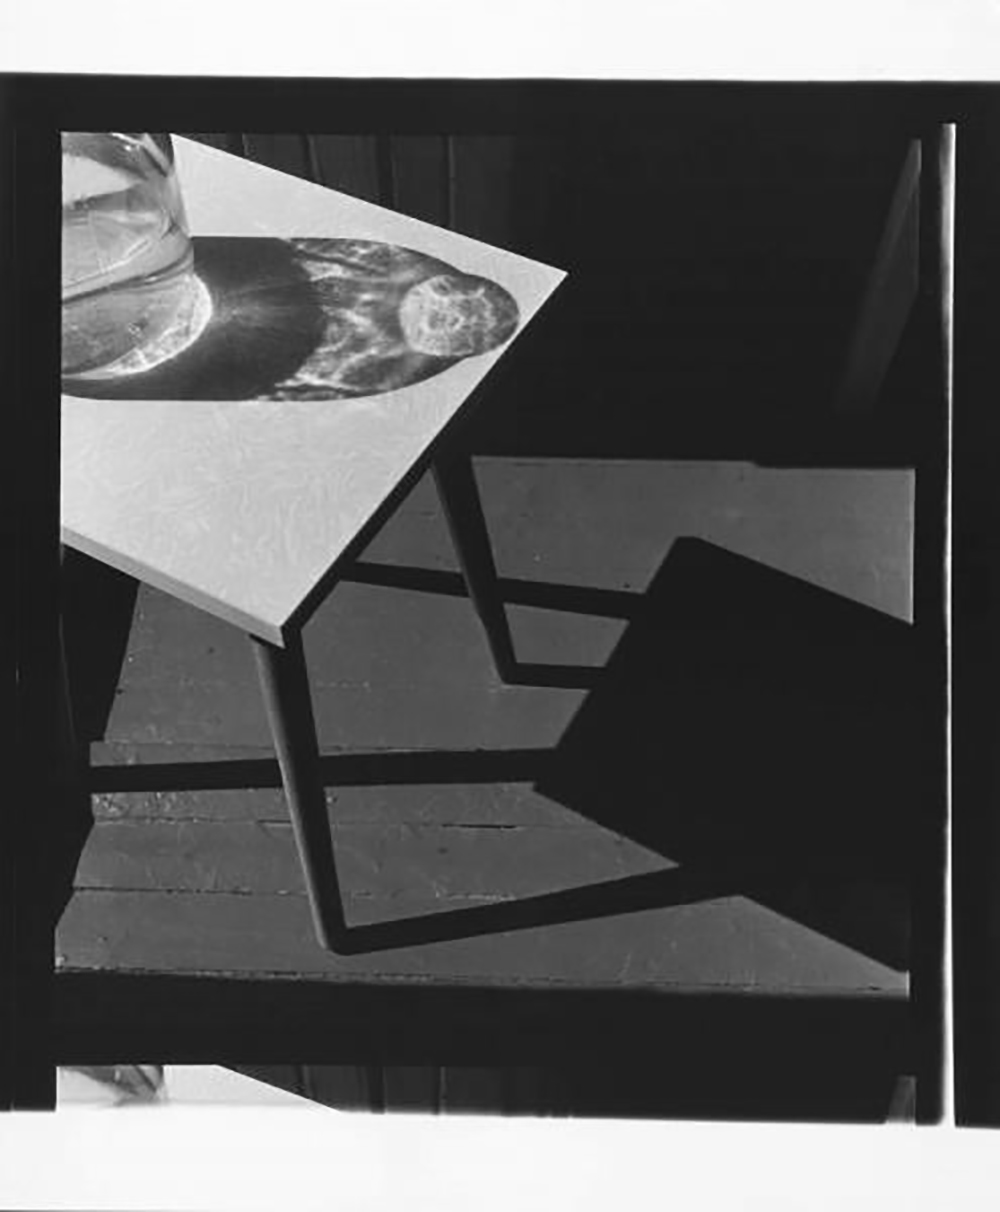 Il successo per lui arrivò a cavallo tra gli anni Settanta e gli anni Ottanta, quando realizzò la serie fotografica in bianco e nero “Quadrati” / Fotografia № 55 (1981)